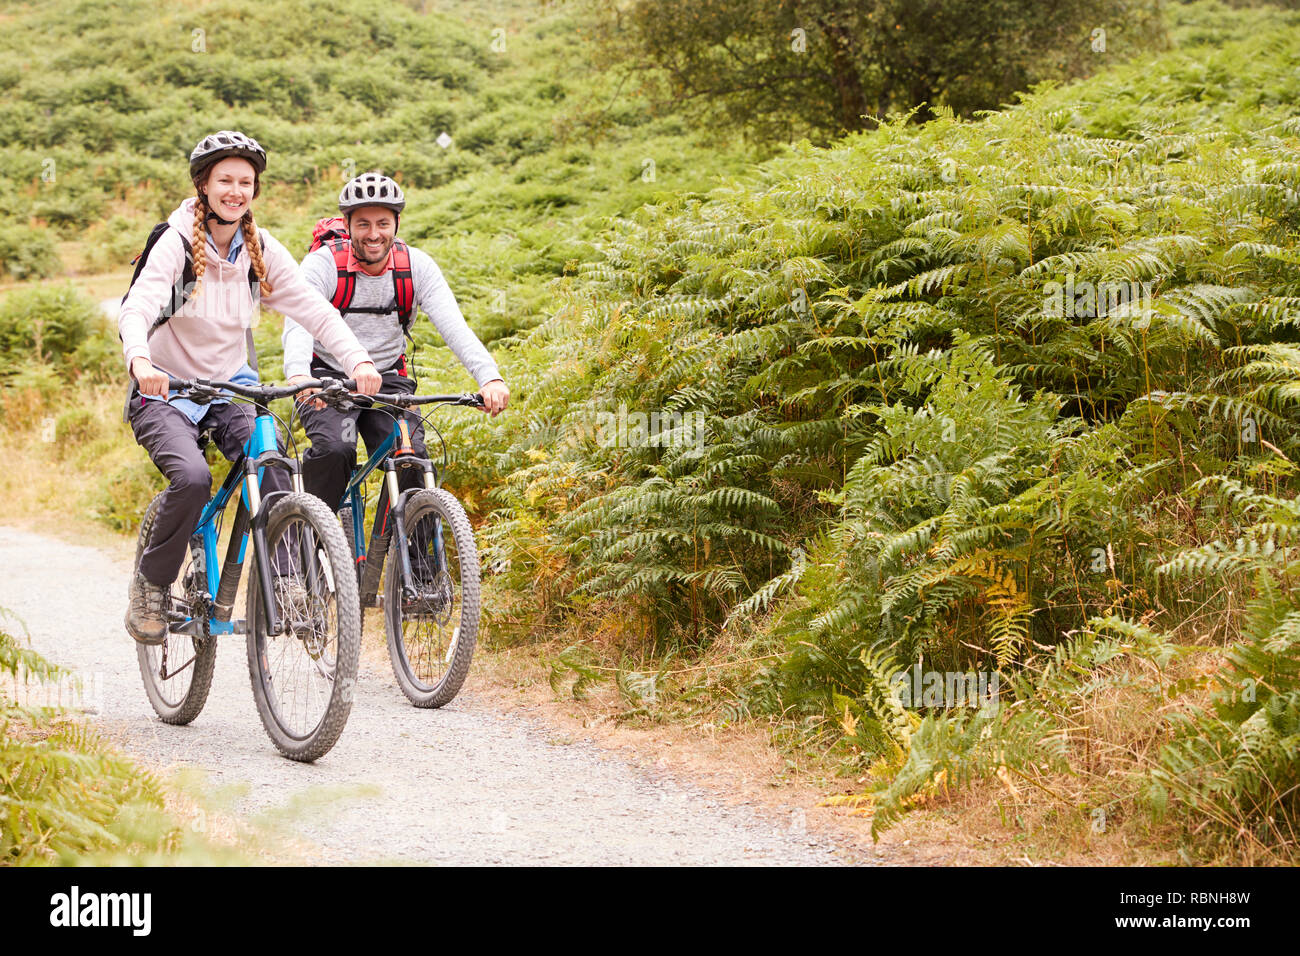 Young adult couple riding mountain bikes dans la campagne, pleine longueur Banque D'Images